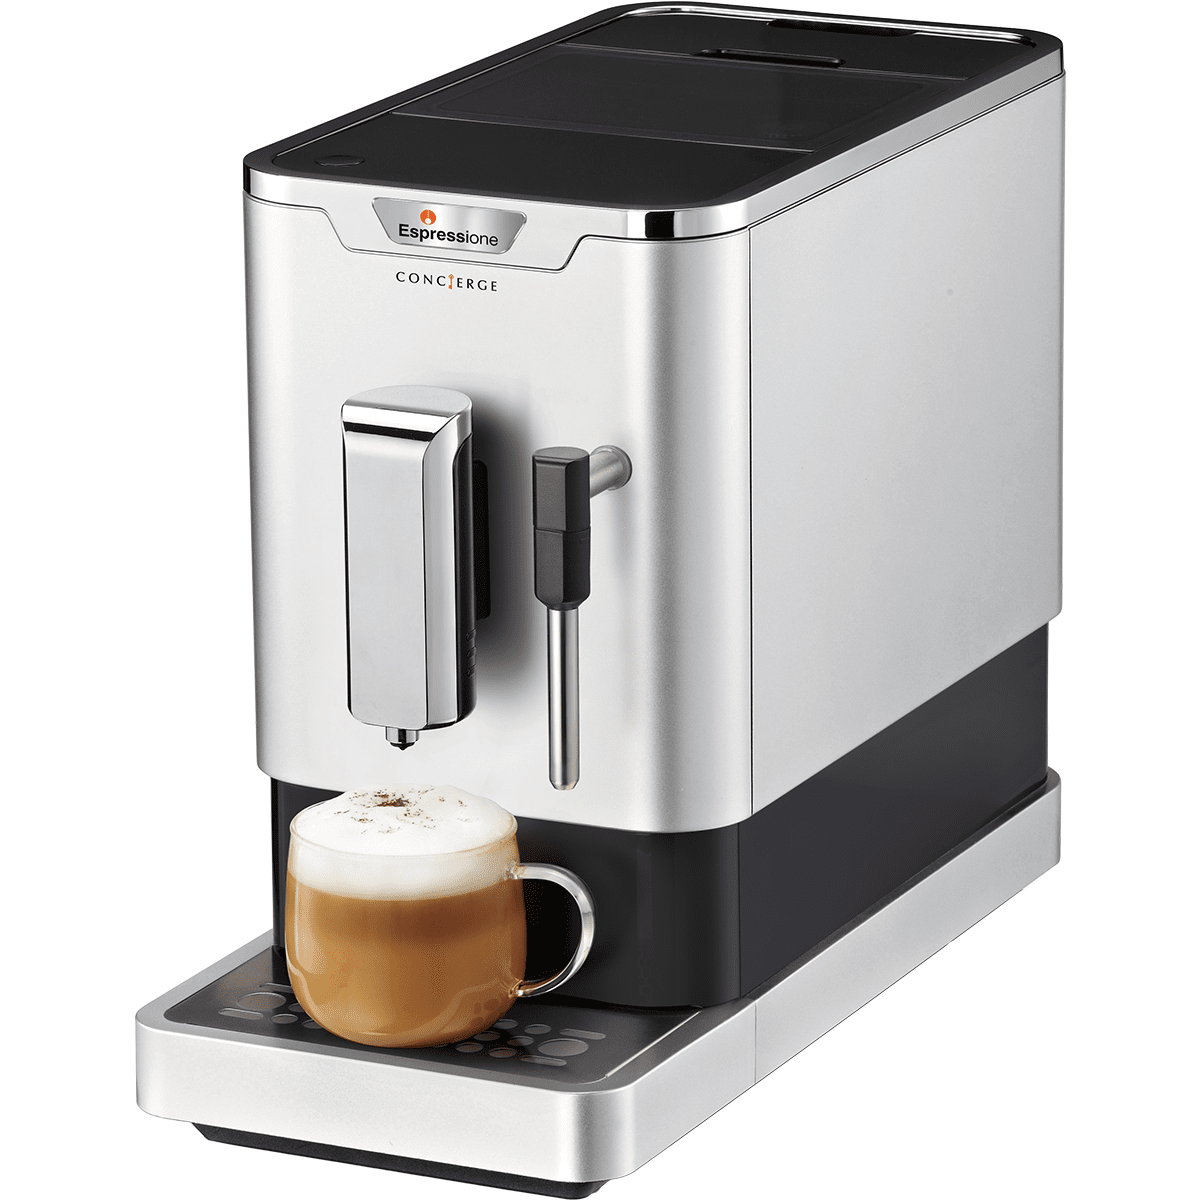 Espressione Concierge Fully Automatic Espresso Machine (8212s)